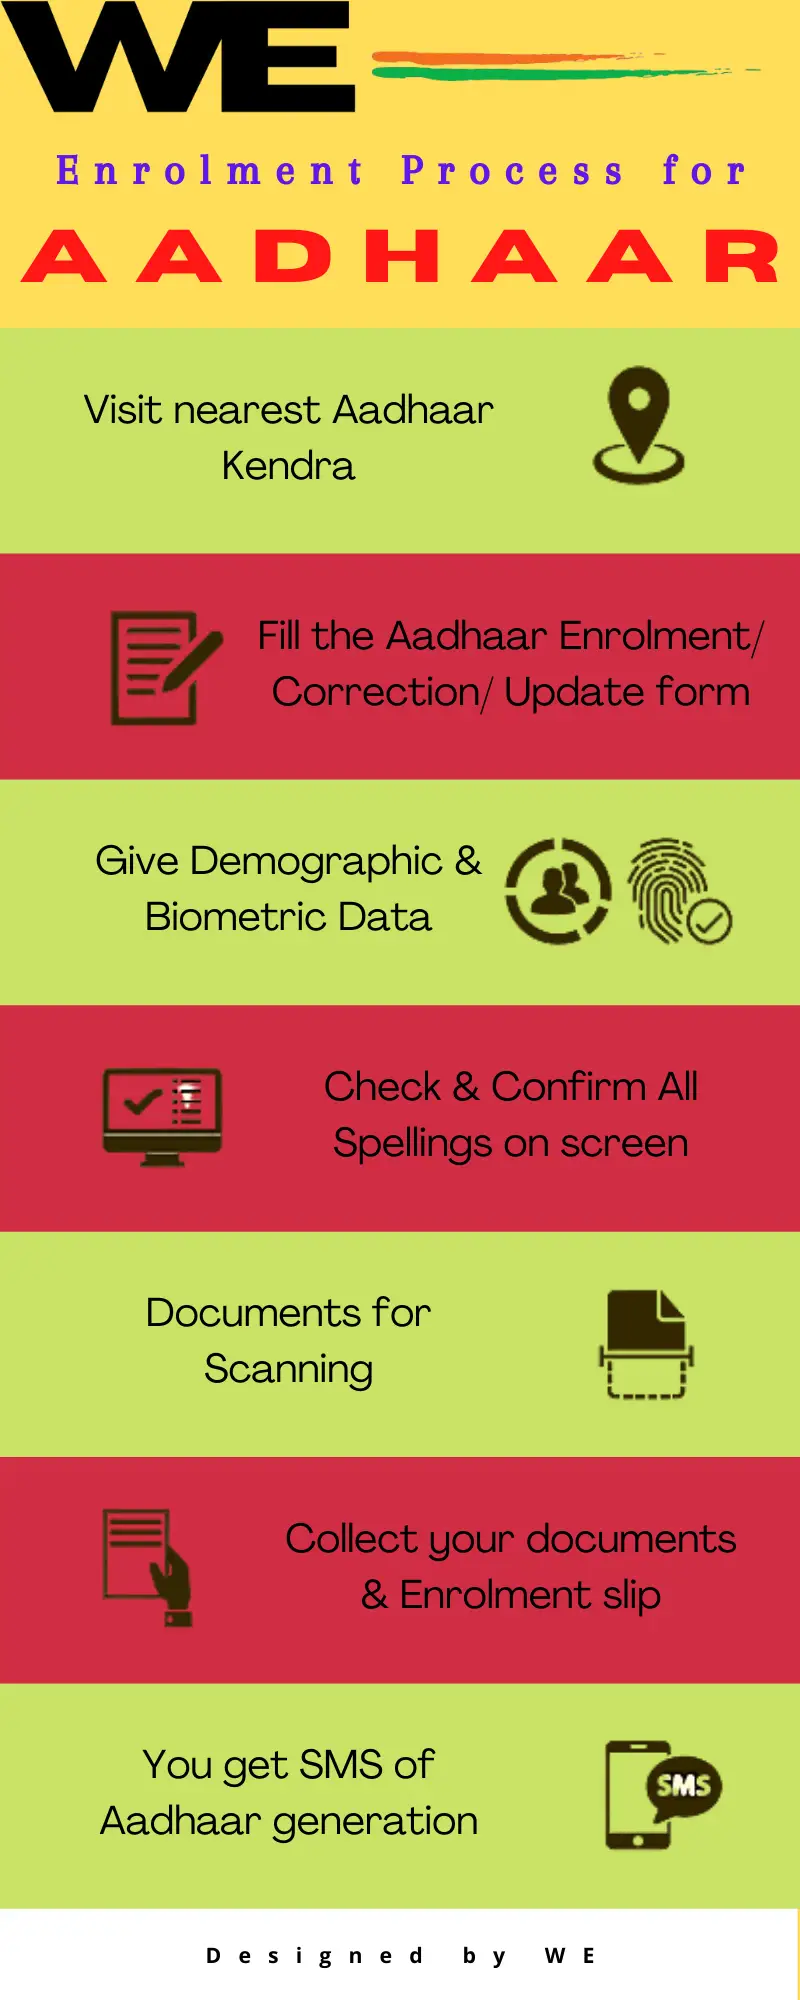 Enrolment Process of Aadhaar